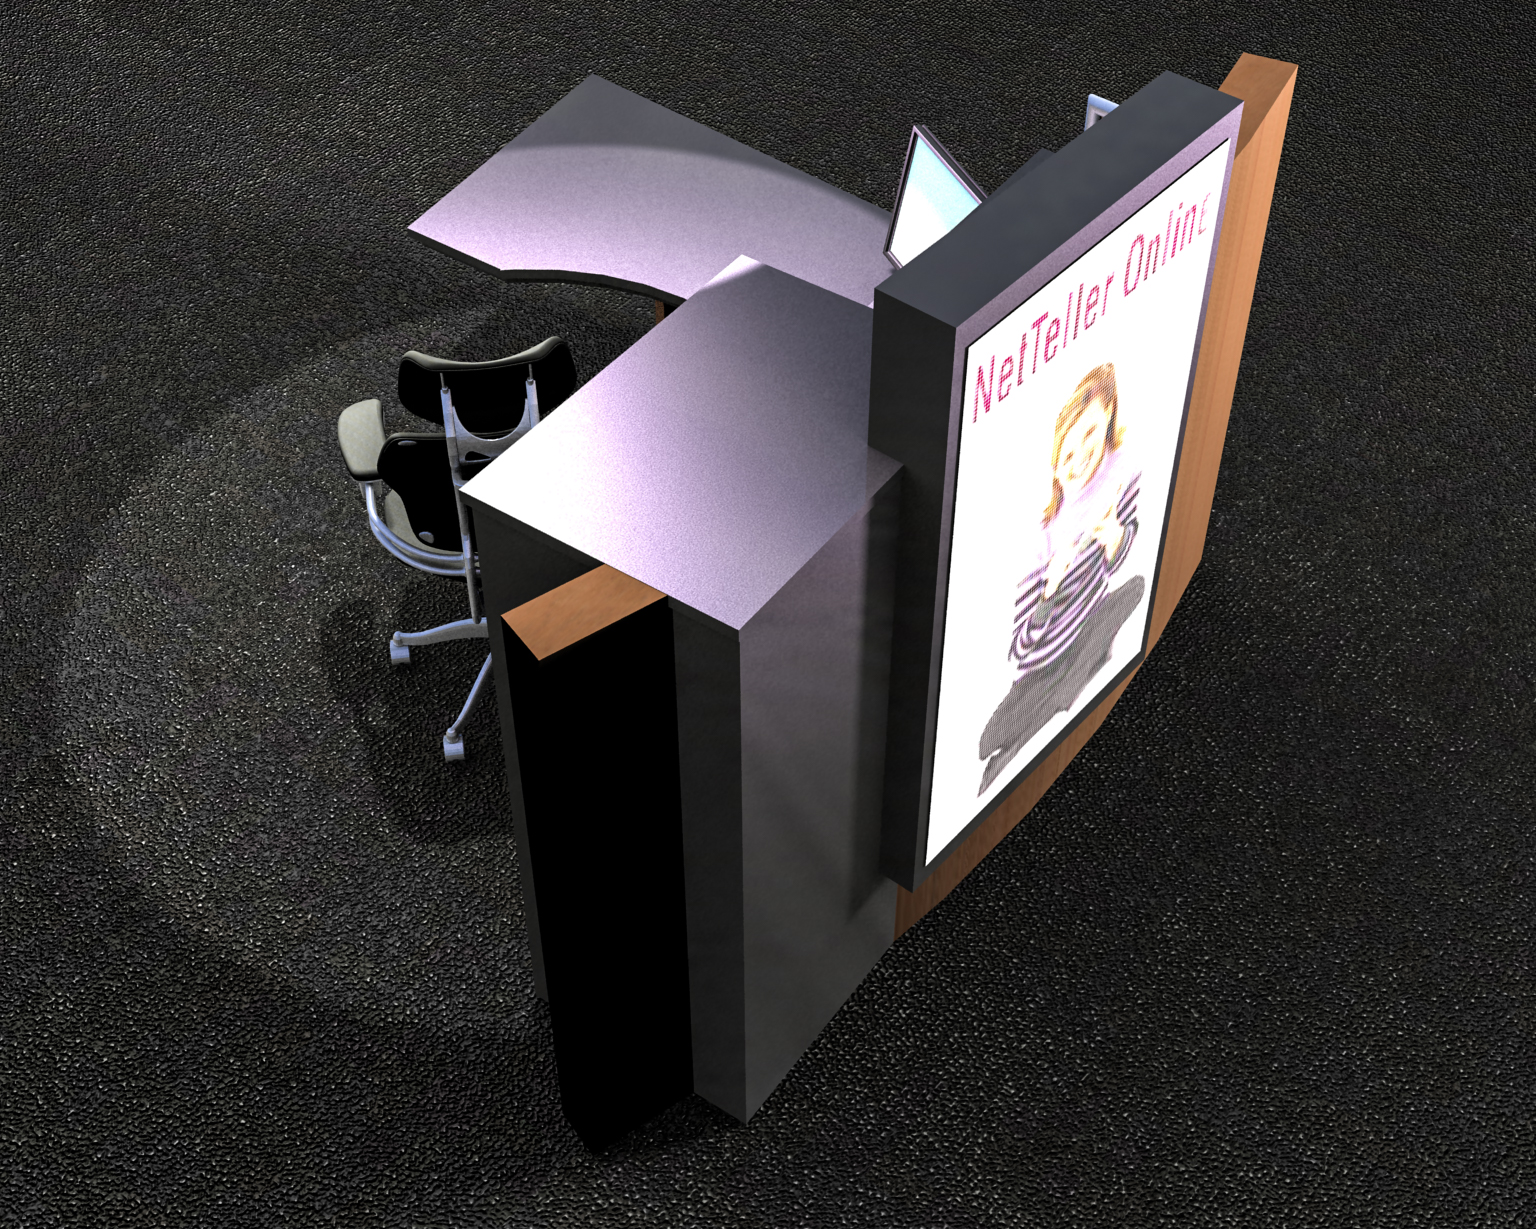 S.F. Bank: Model -- Platform desk and display concept